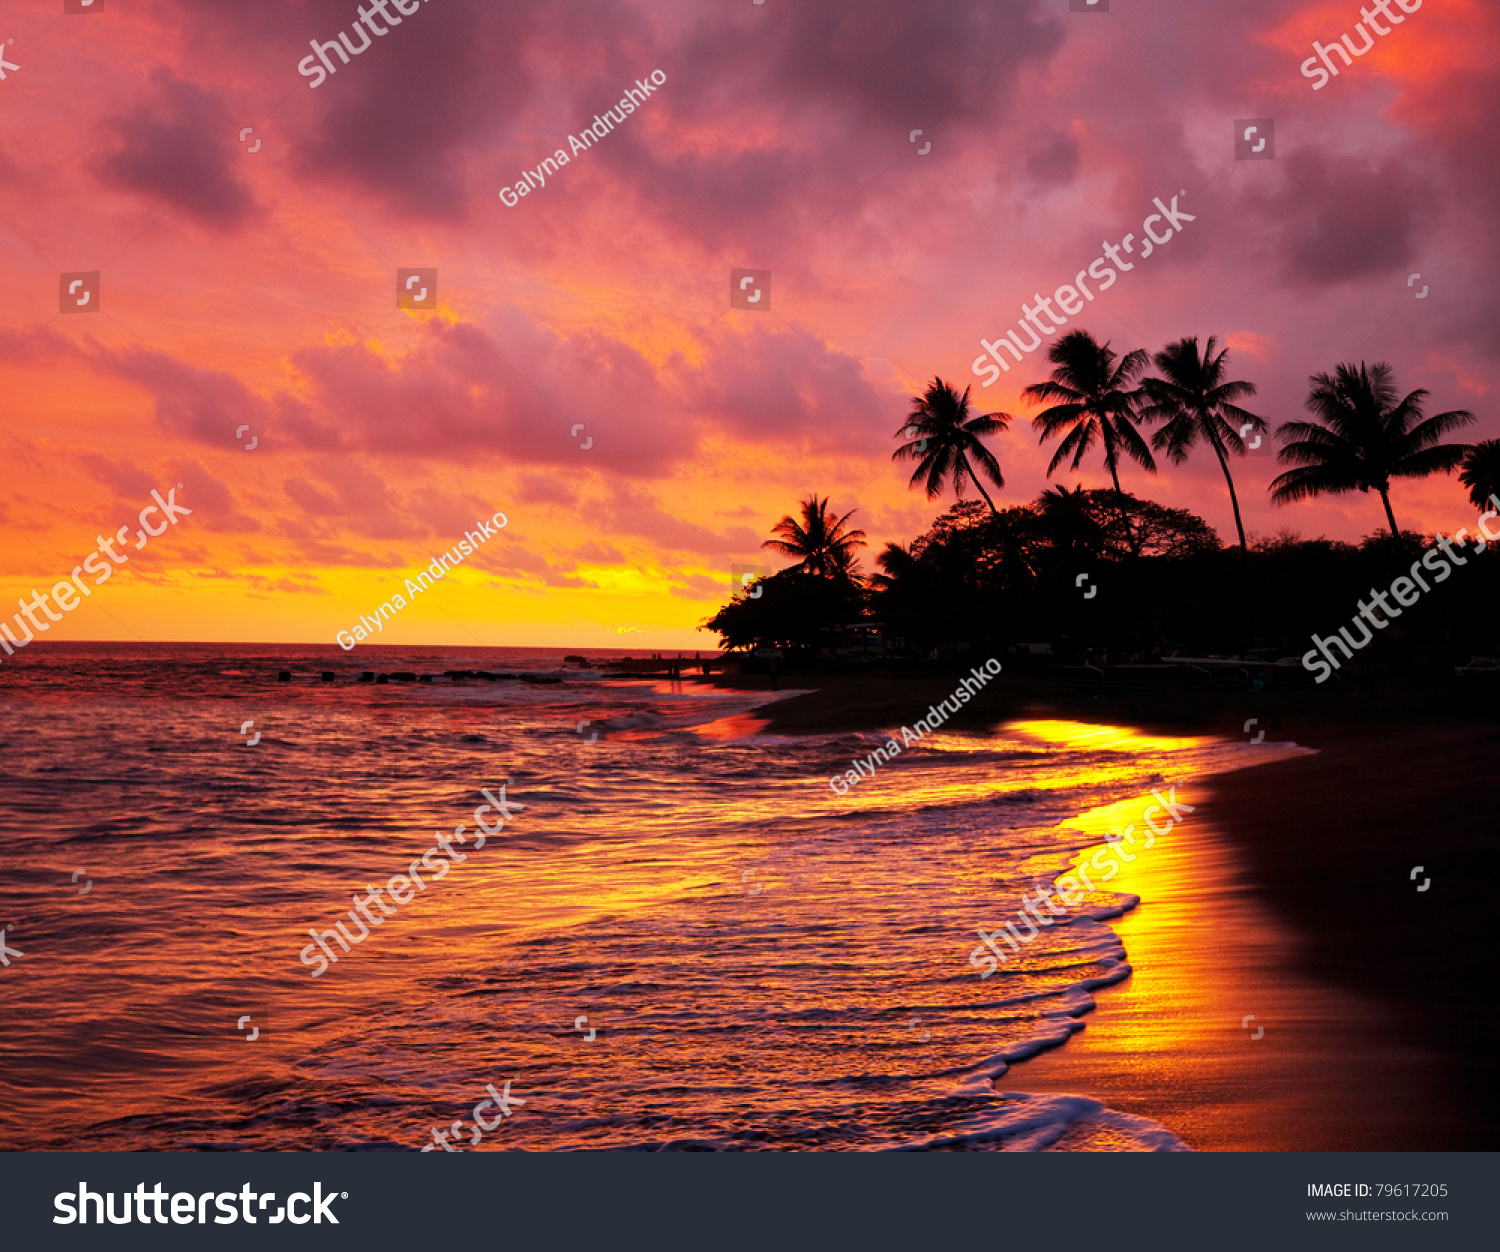 Hawaiian Sunset Stock Photo 79617205 : Shutterstock